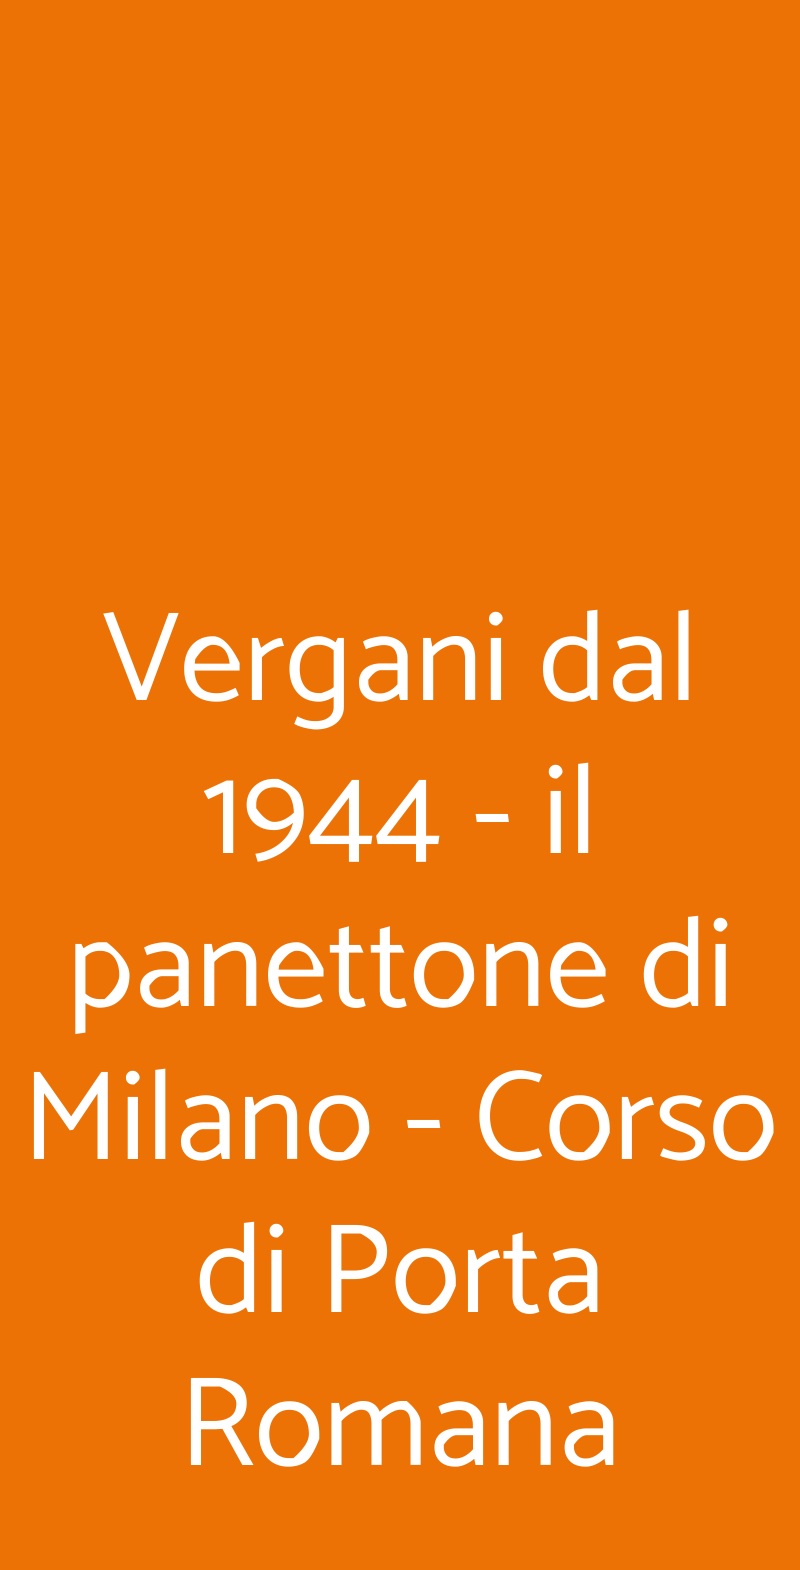 Vergani dal 1944 - il panettone di Milano - Corso di Porta Romana Milano menù 1 pagina